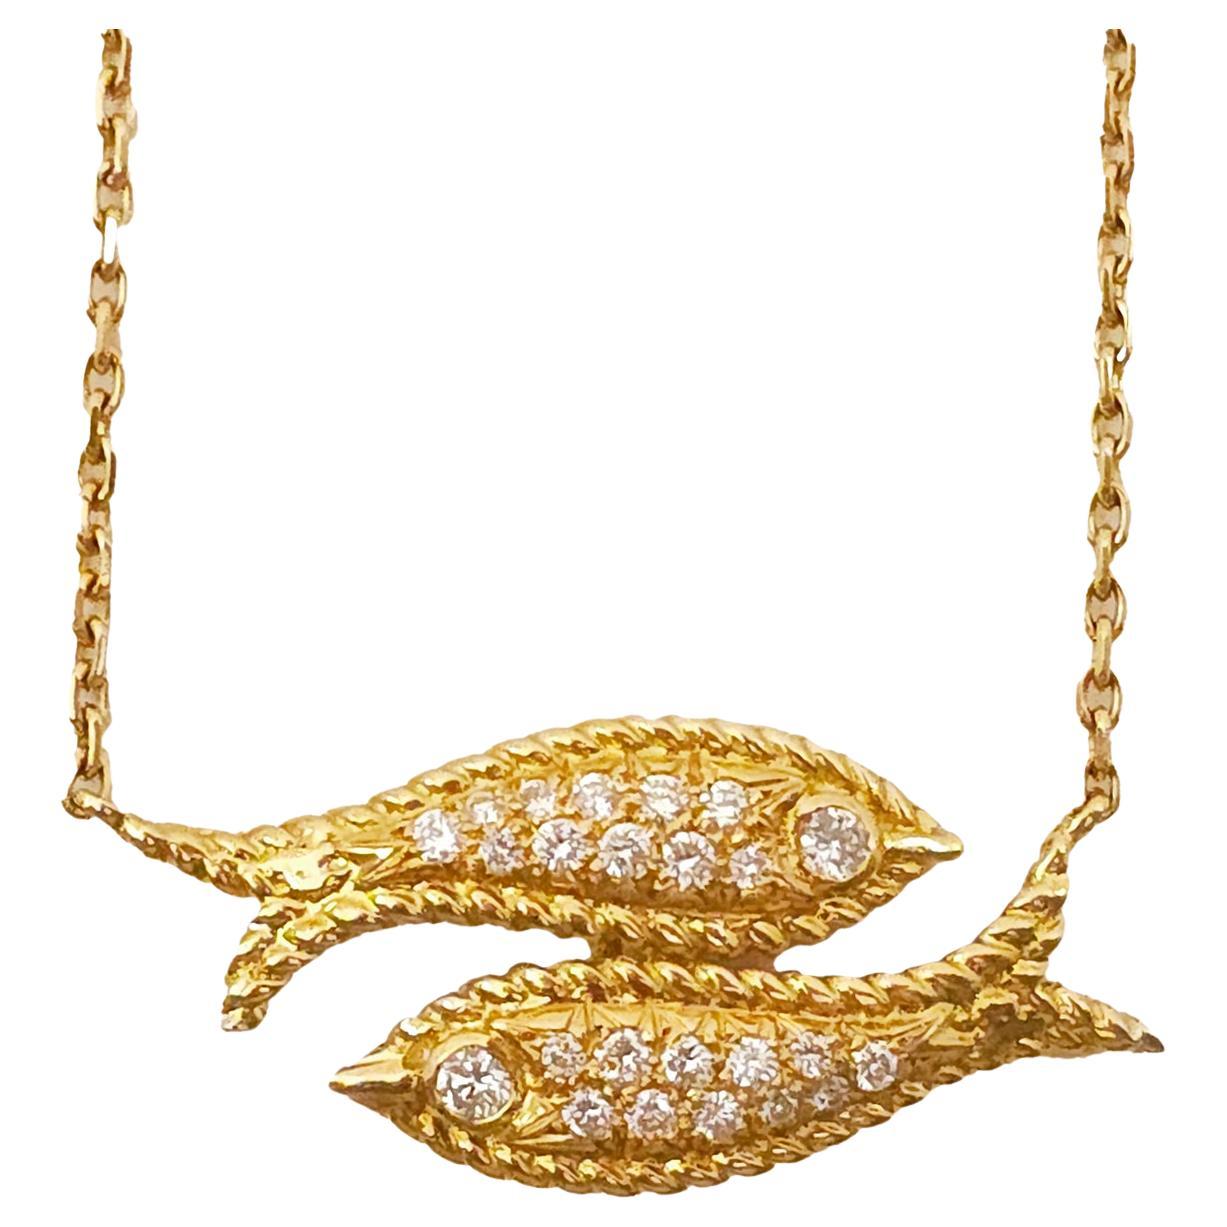 Fred Paris Diamond and 18 Karat Gold Pisces Pendant Necklace For Sale